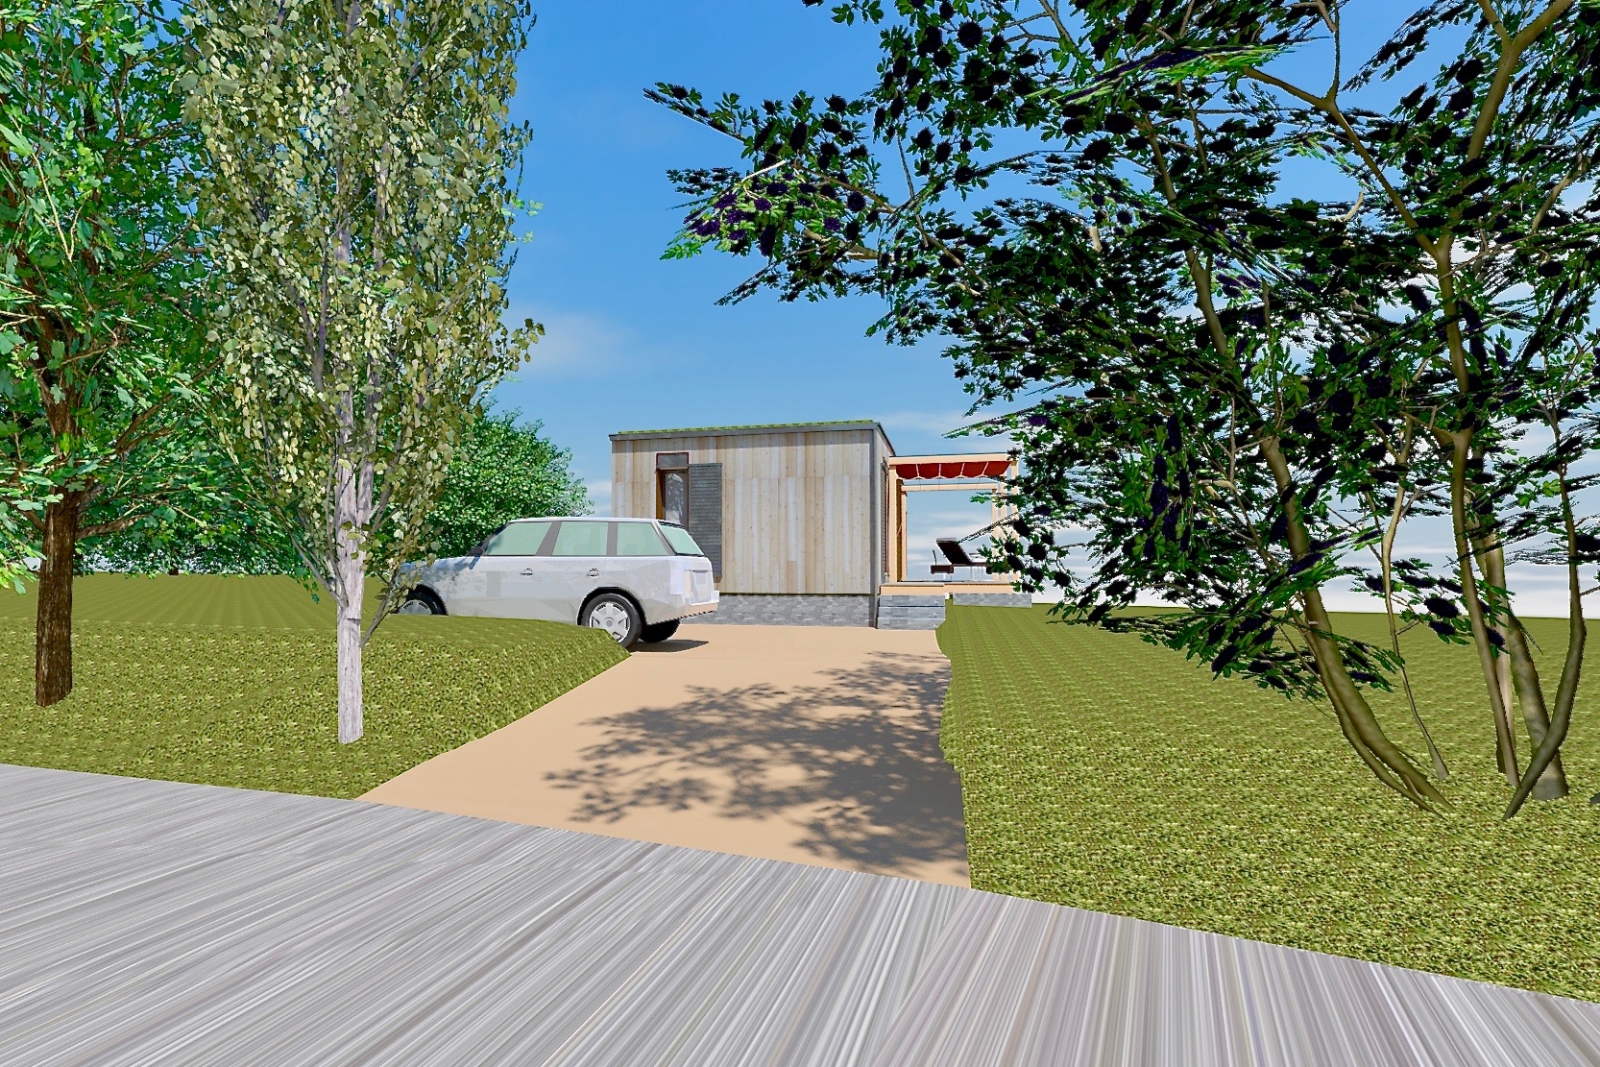 Projet B. à Sainte Agathe (63 120).
Petite maison contemporaine bioclimatique, écologique et passive en zone rurale.